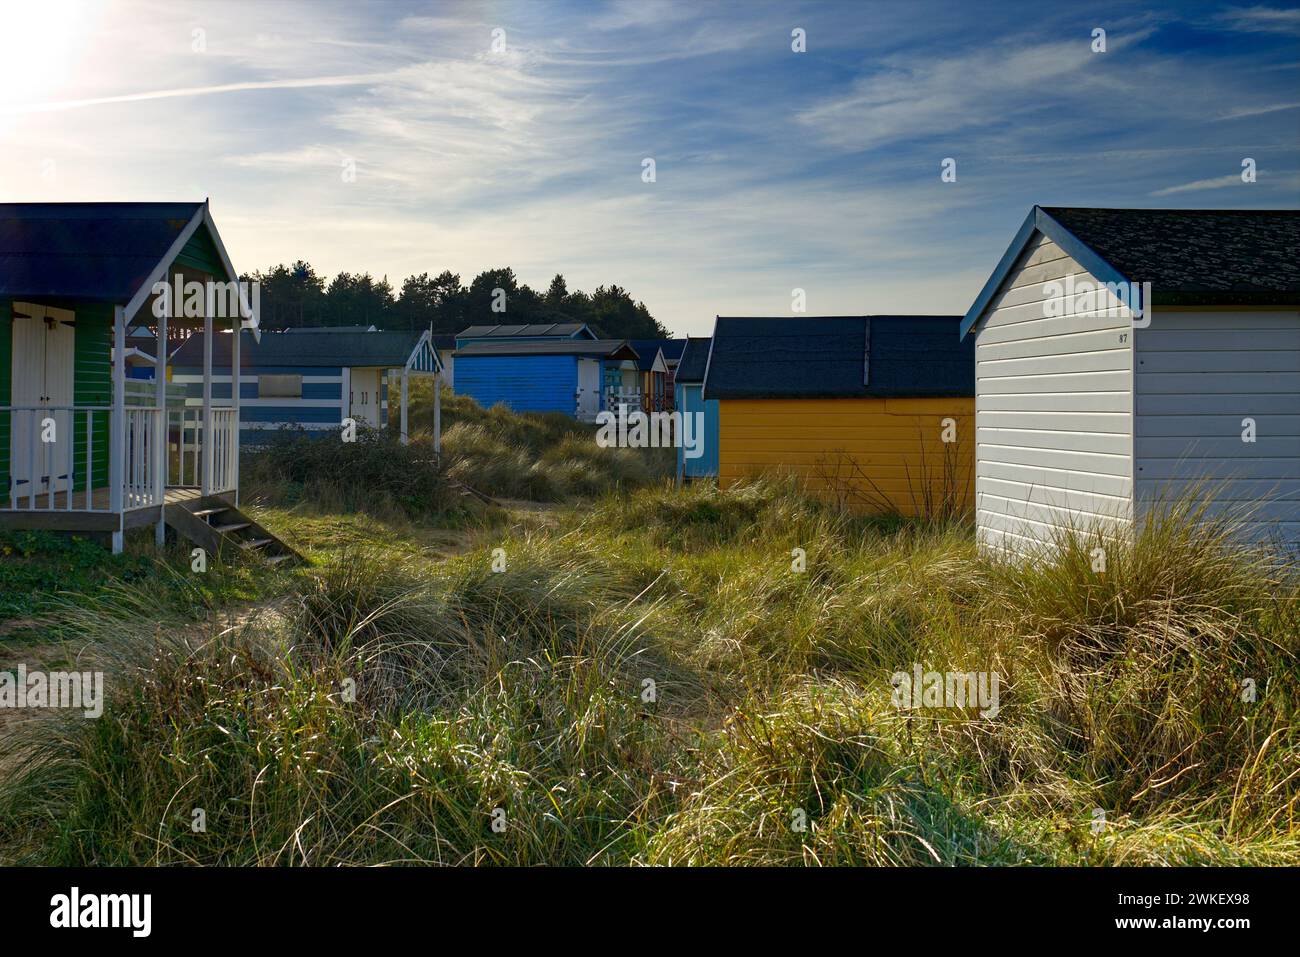 Hunstanton, Norfolk, Royaume-Uni - cabanes de plage colorées dans les dunes de sable du vieux Hunstanton photographiées par une journée ensoleillée Banque D'Images